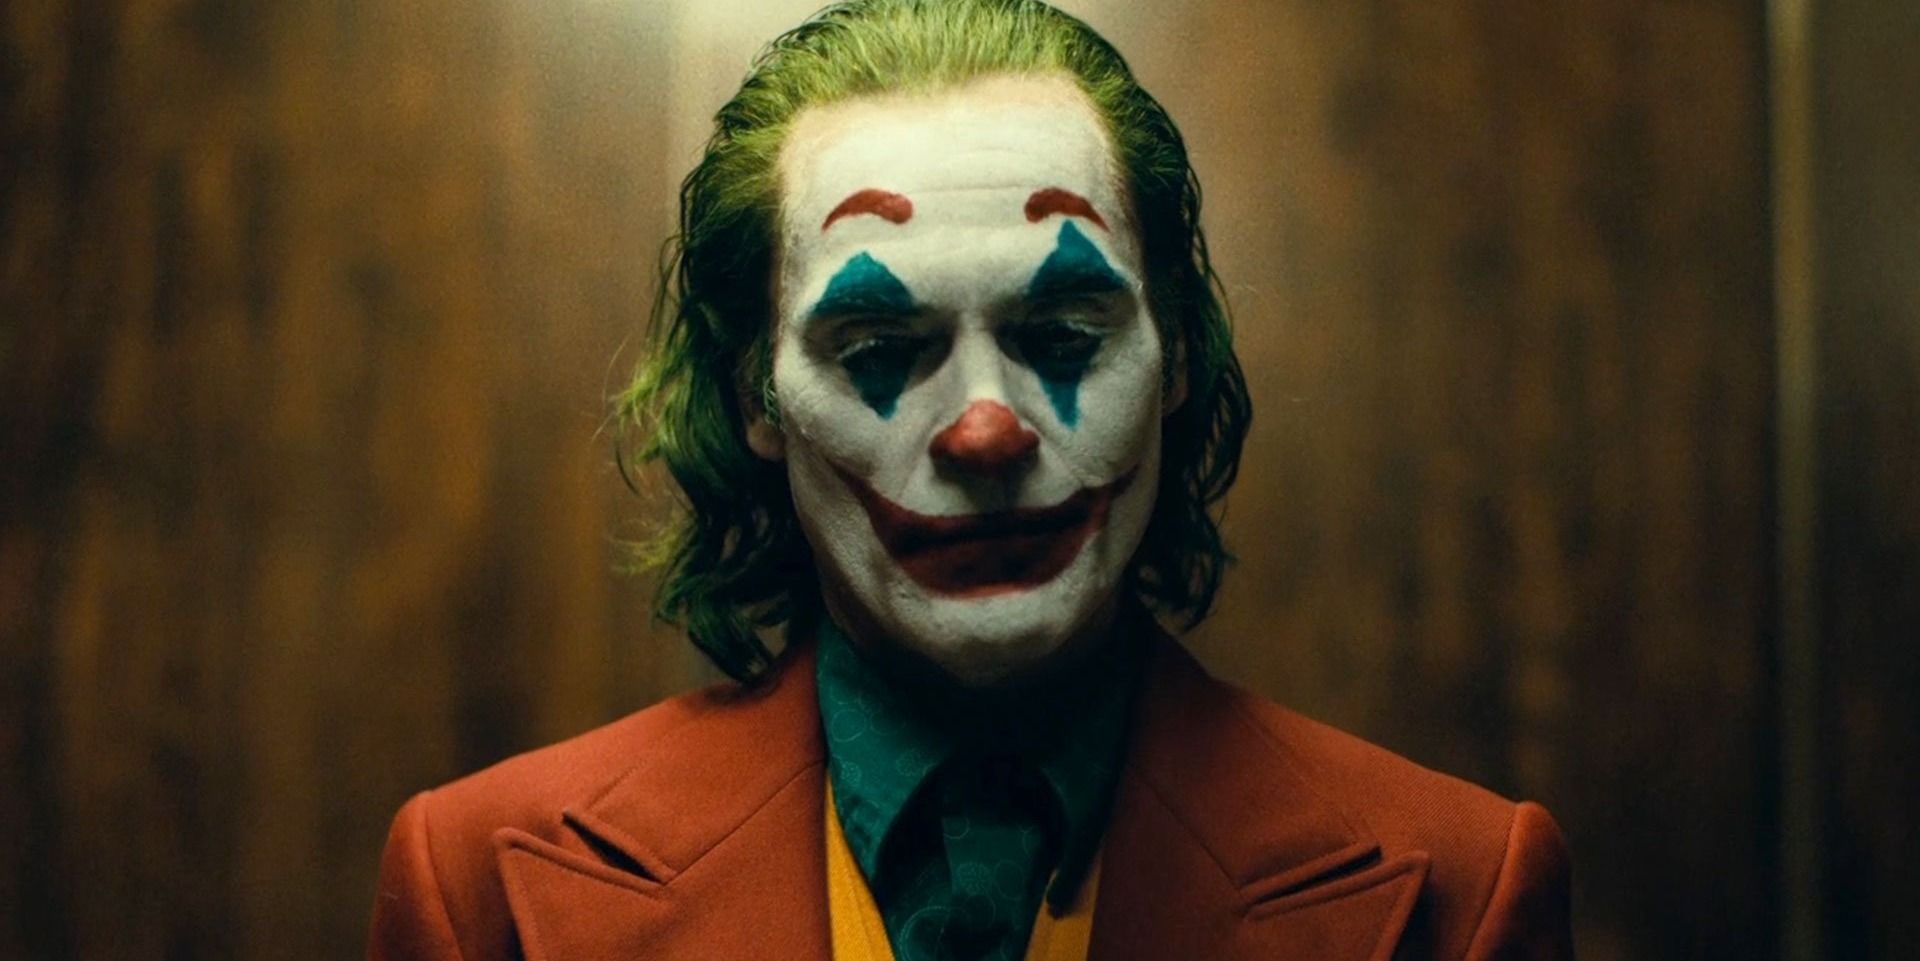 Les dates de sortie numérique et Blu-ray de Joker révélées